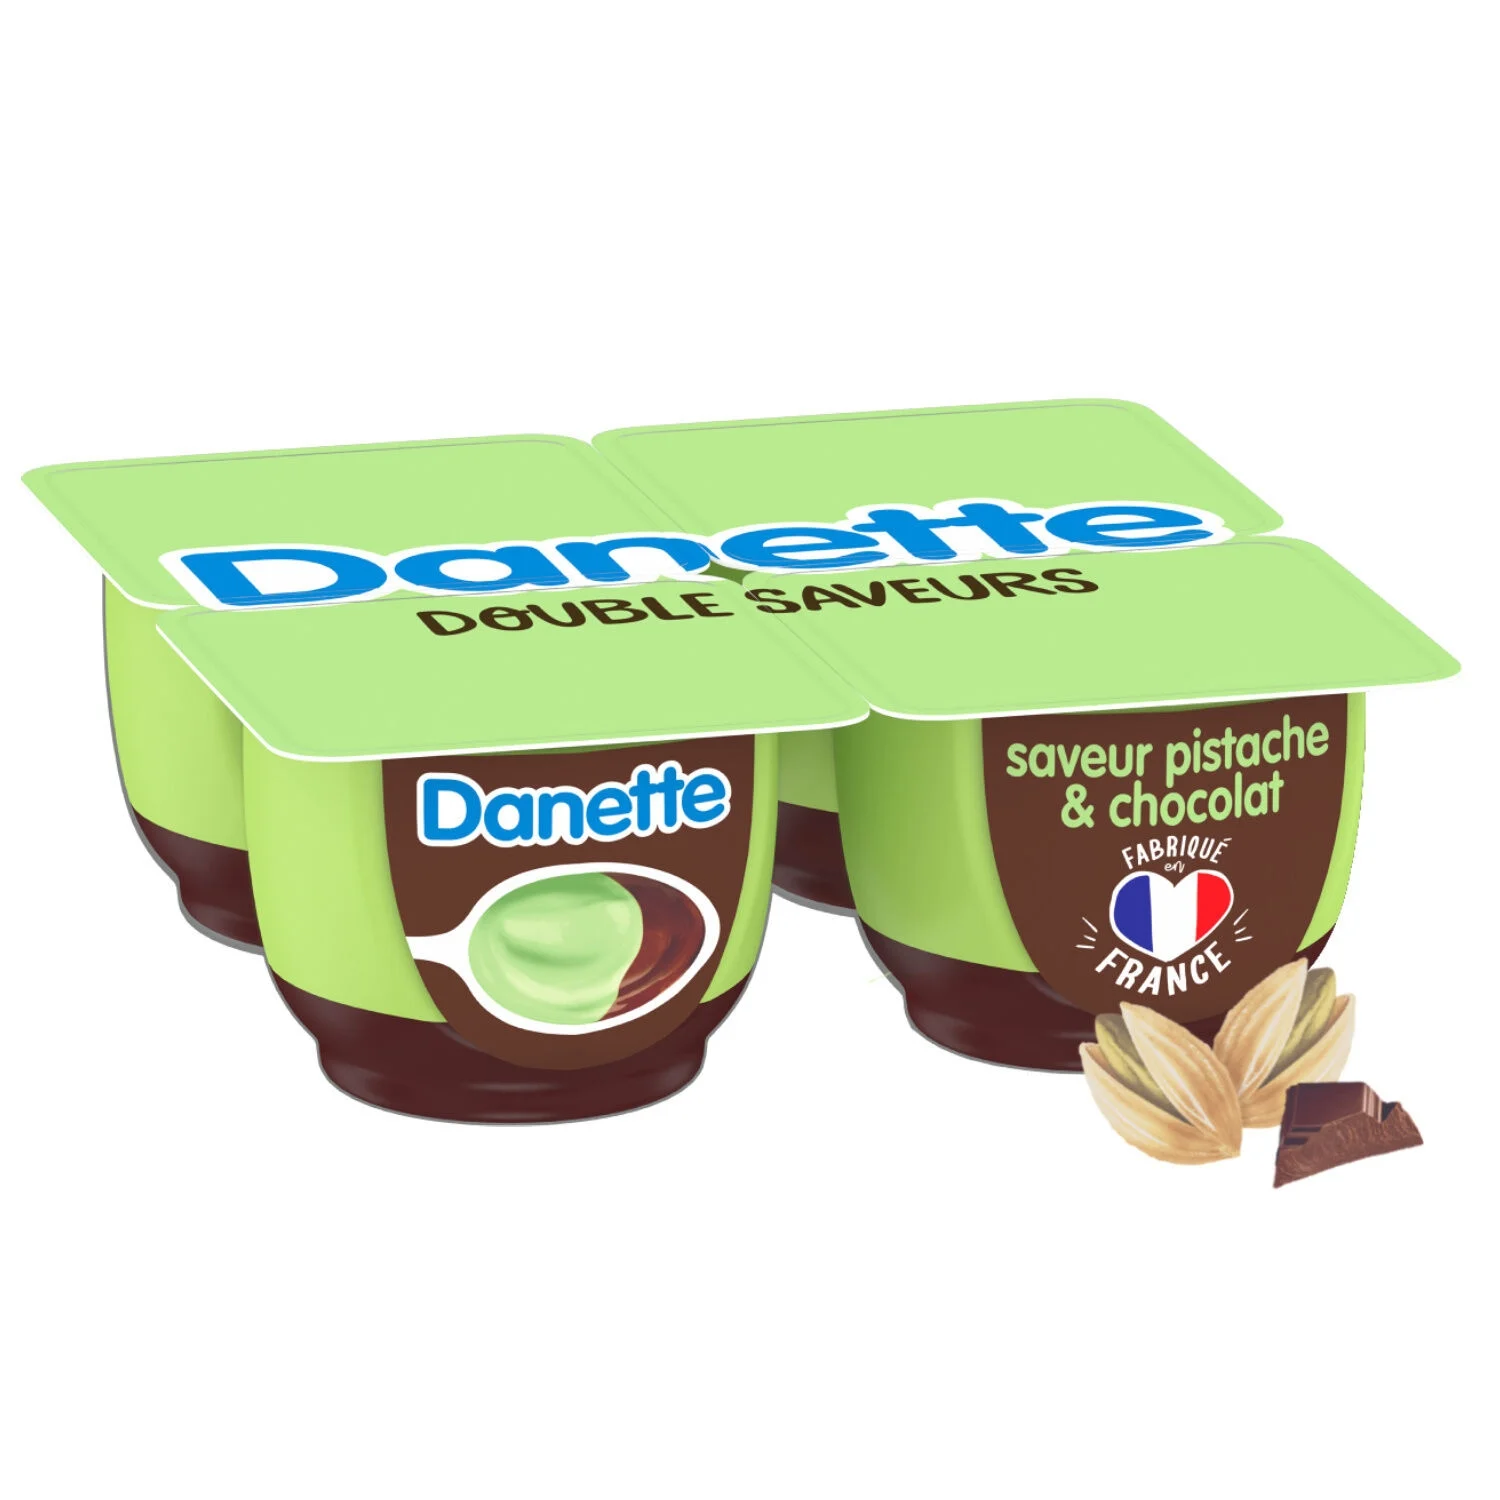 125gx4 Pistache Choco Danette